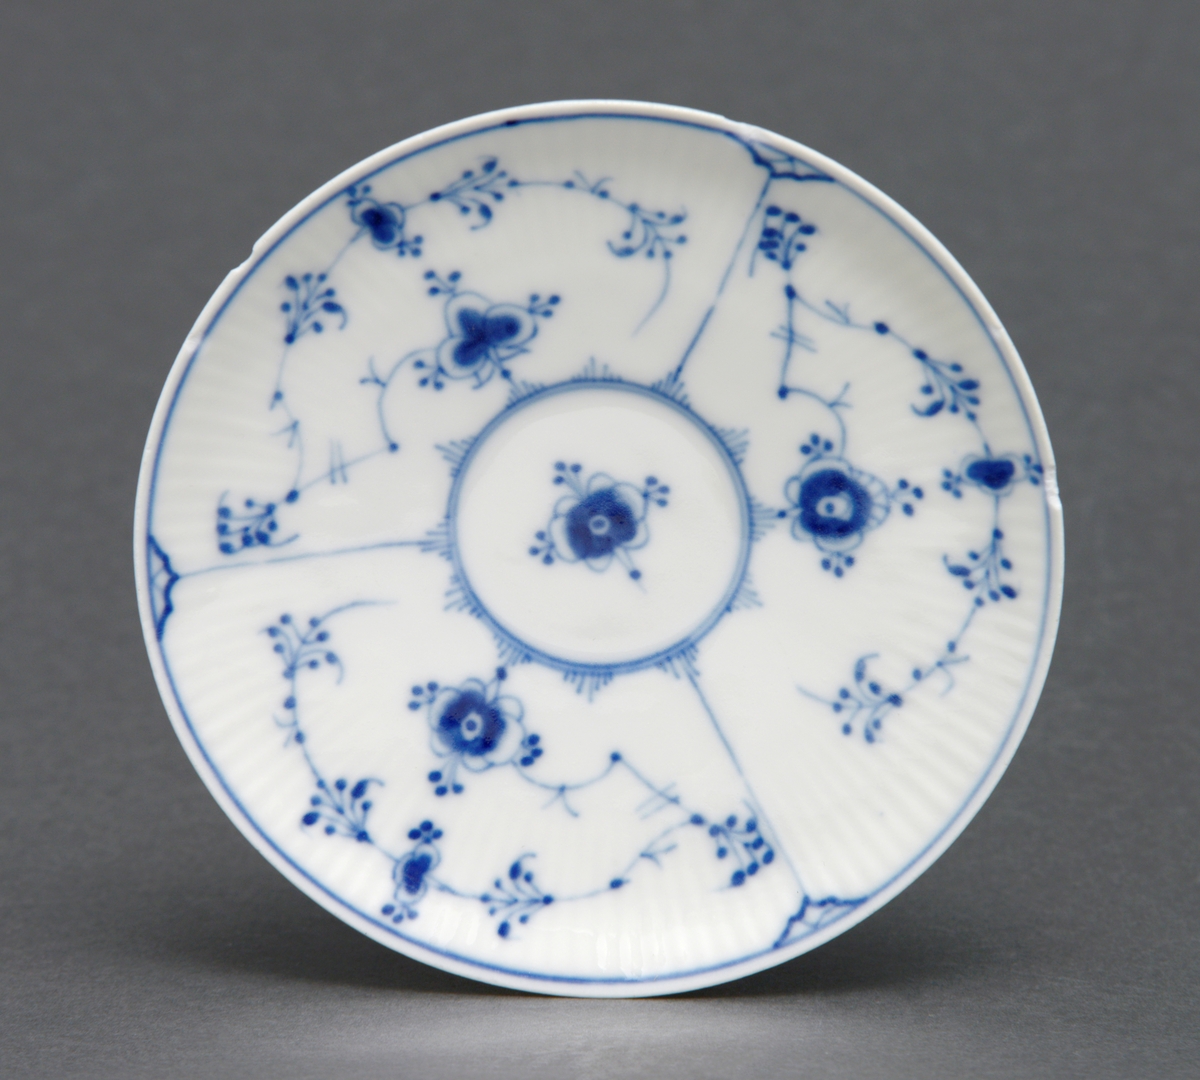 Sirkulært tefat i porselen med glasur. Rifler i porselenet og dekorert med stråmønster i blått. Tilhørende kopp (se relaterte objekter).